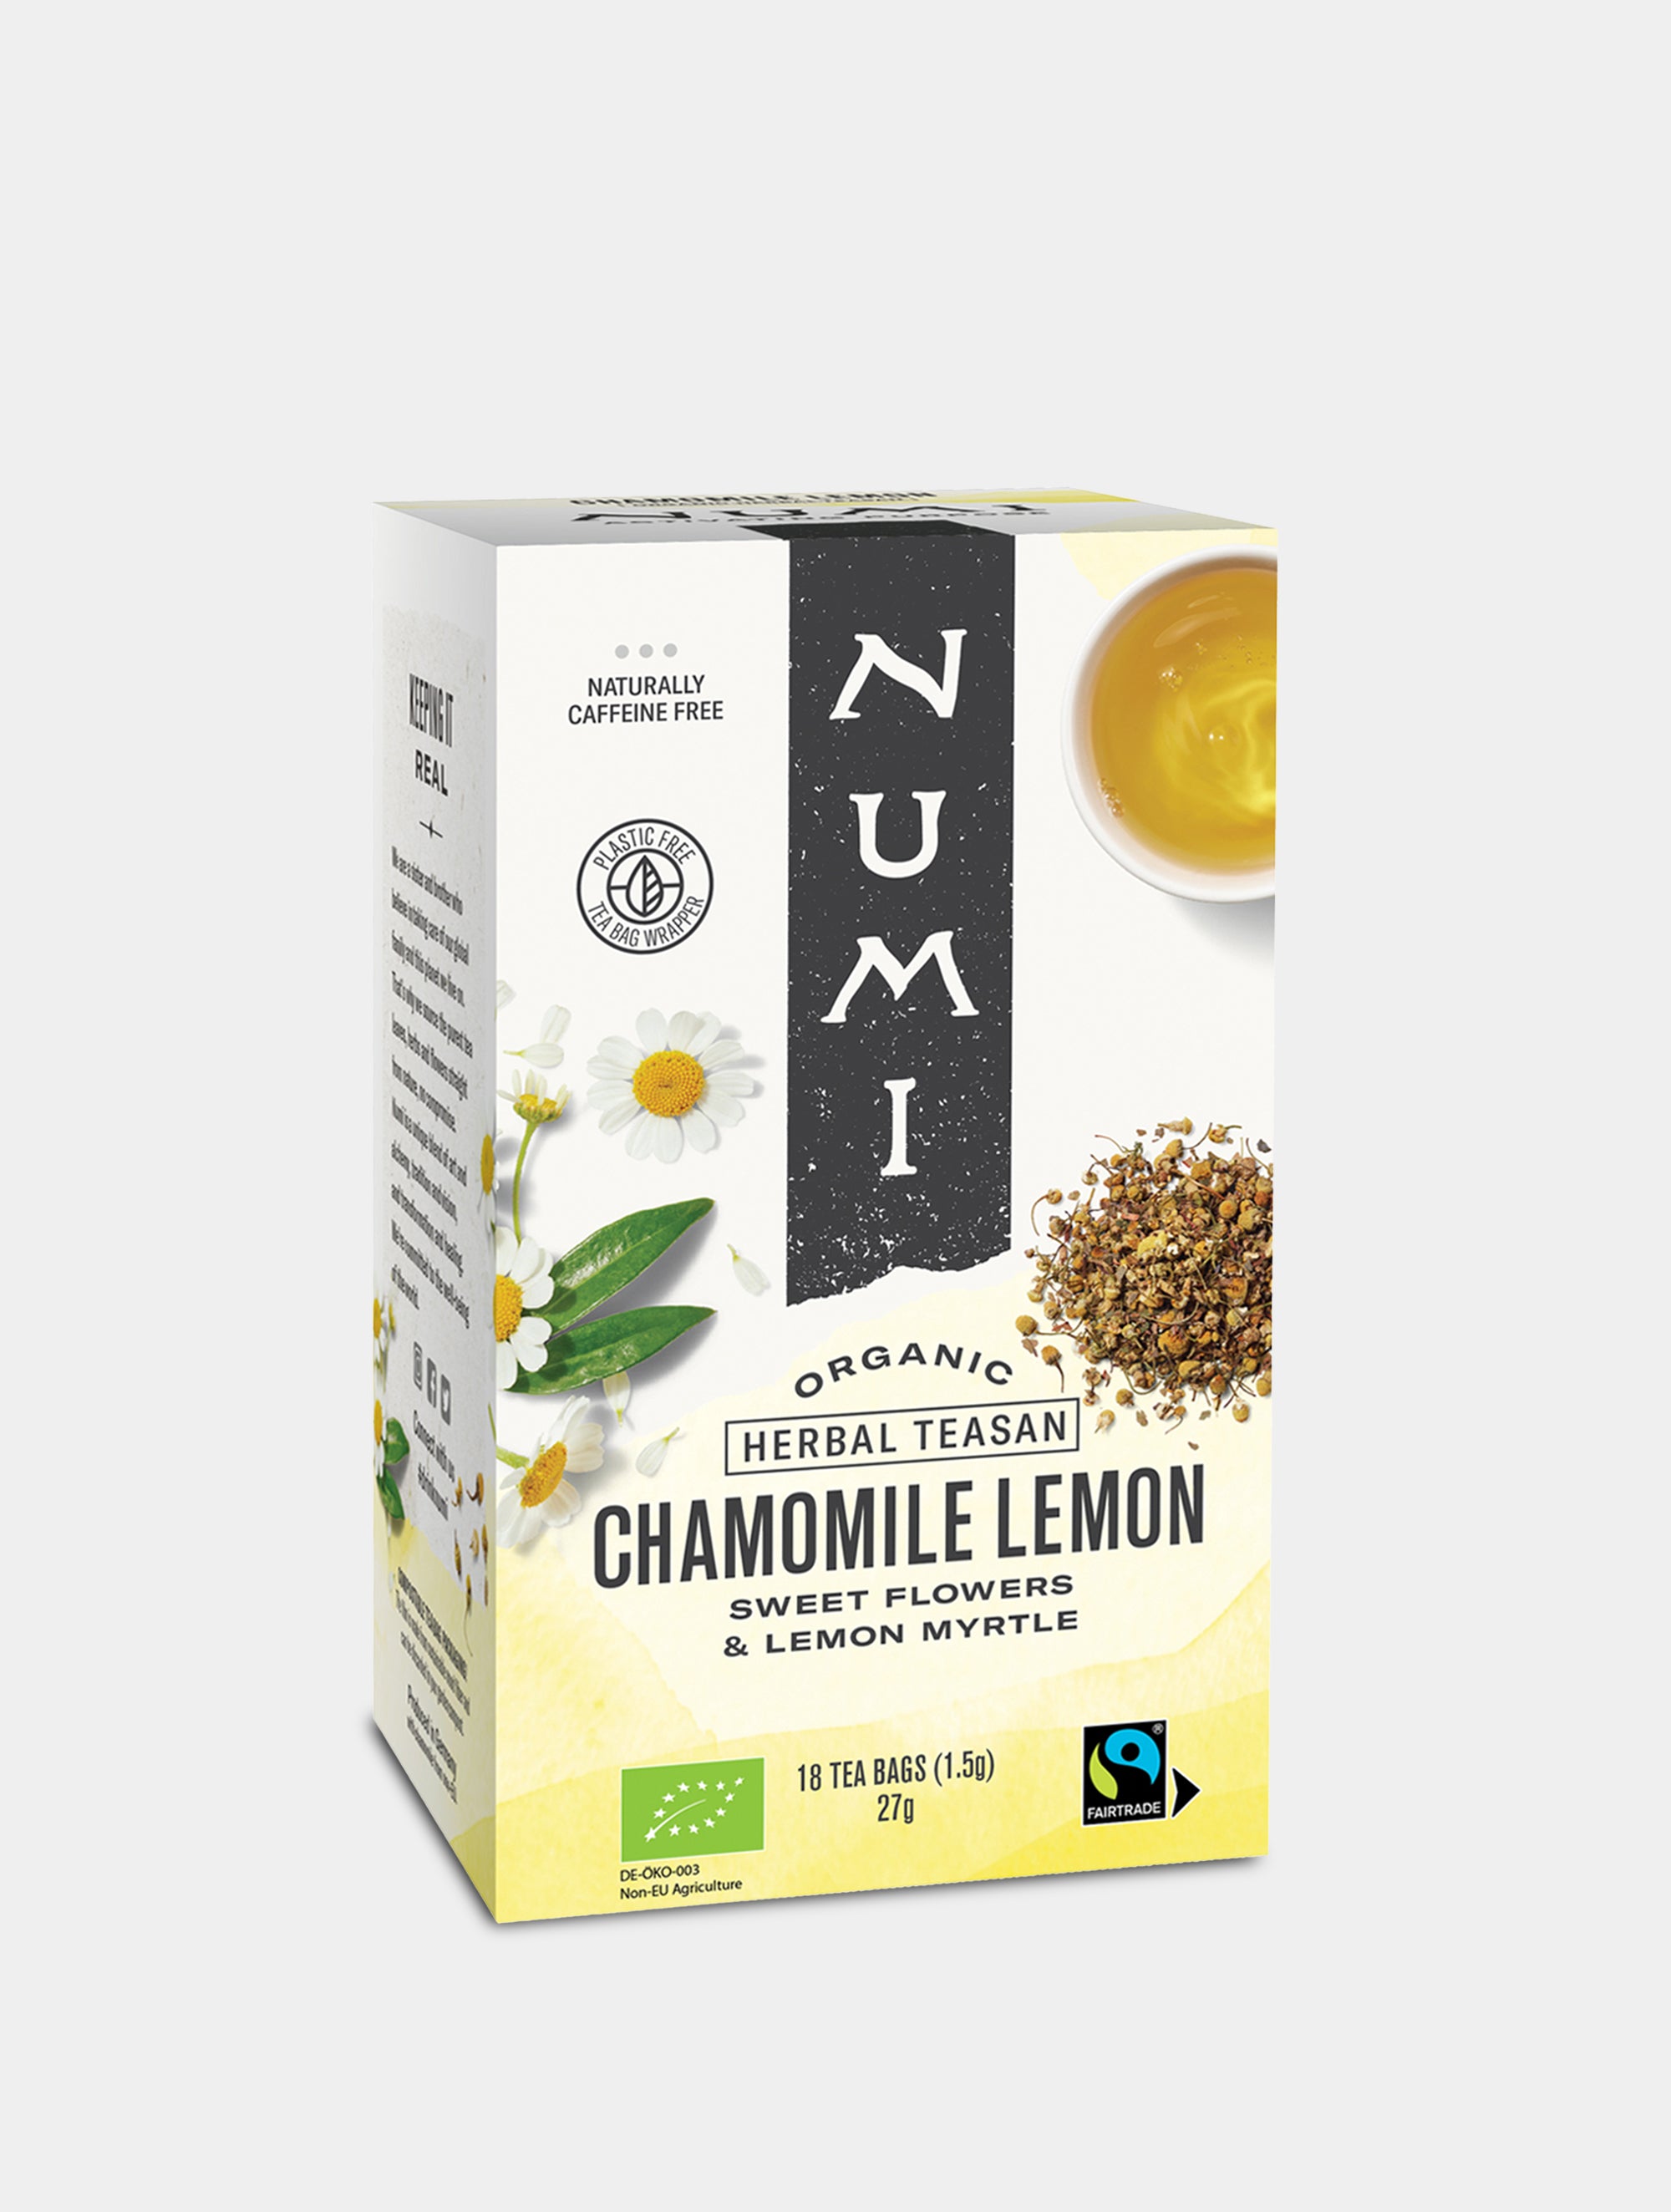 Numi Organic Tea Chamomile Lemon